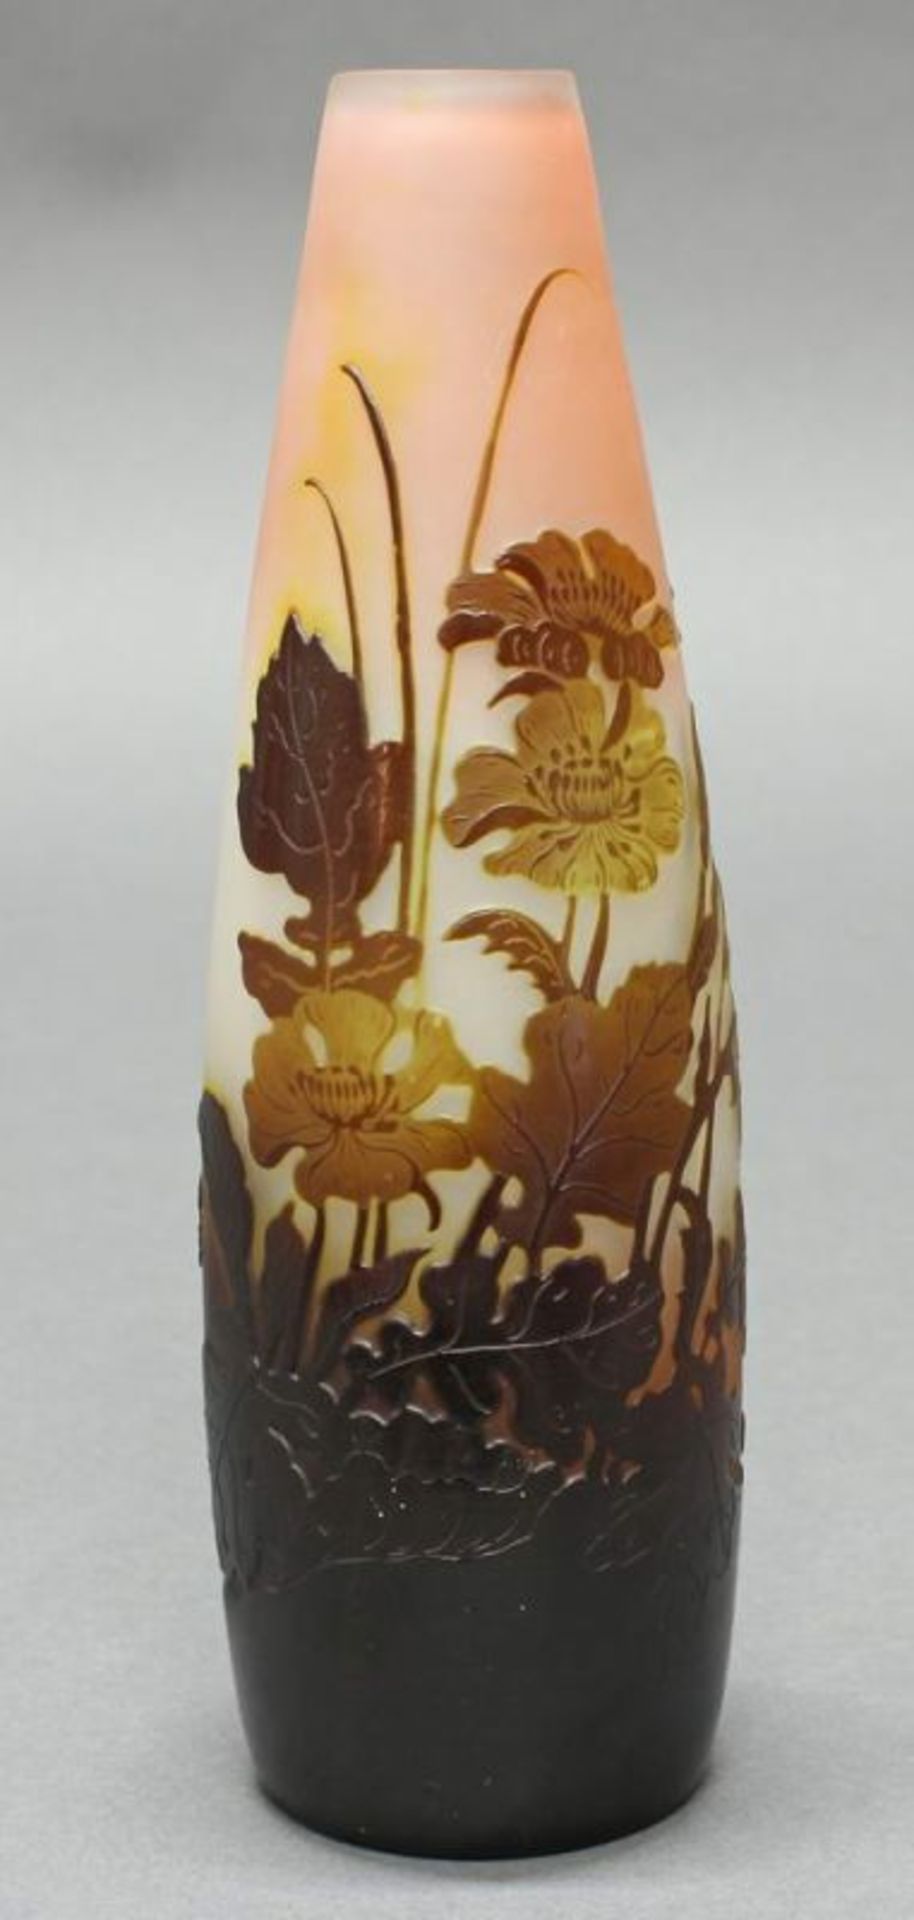 Vase, Emile Gallé, 1906-1914, Glas, brauner Überfangdekor mit Hahnenfuß, Abendstimmung, Fond weiß